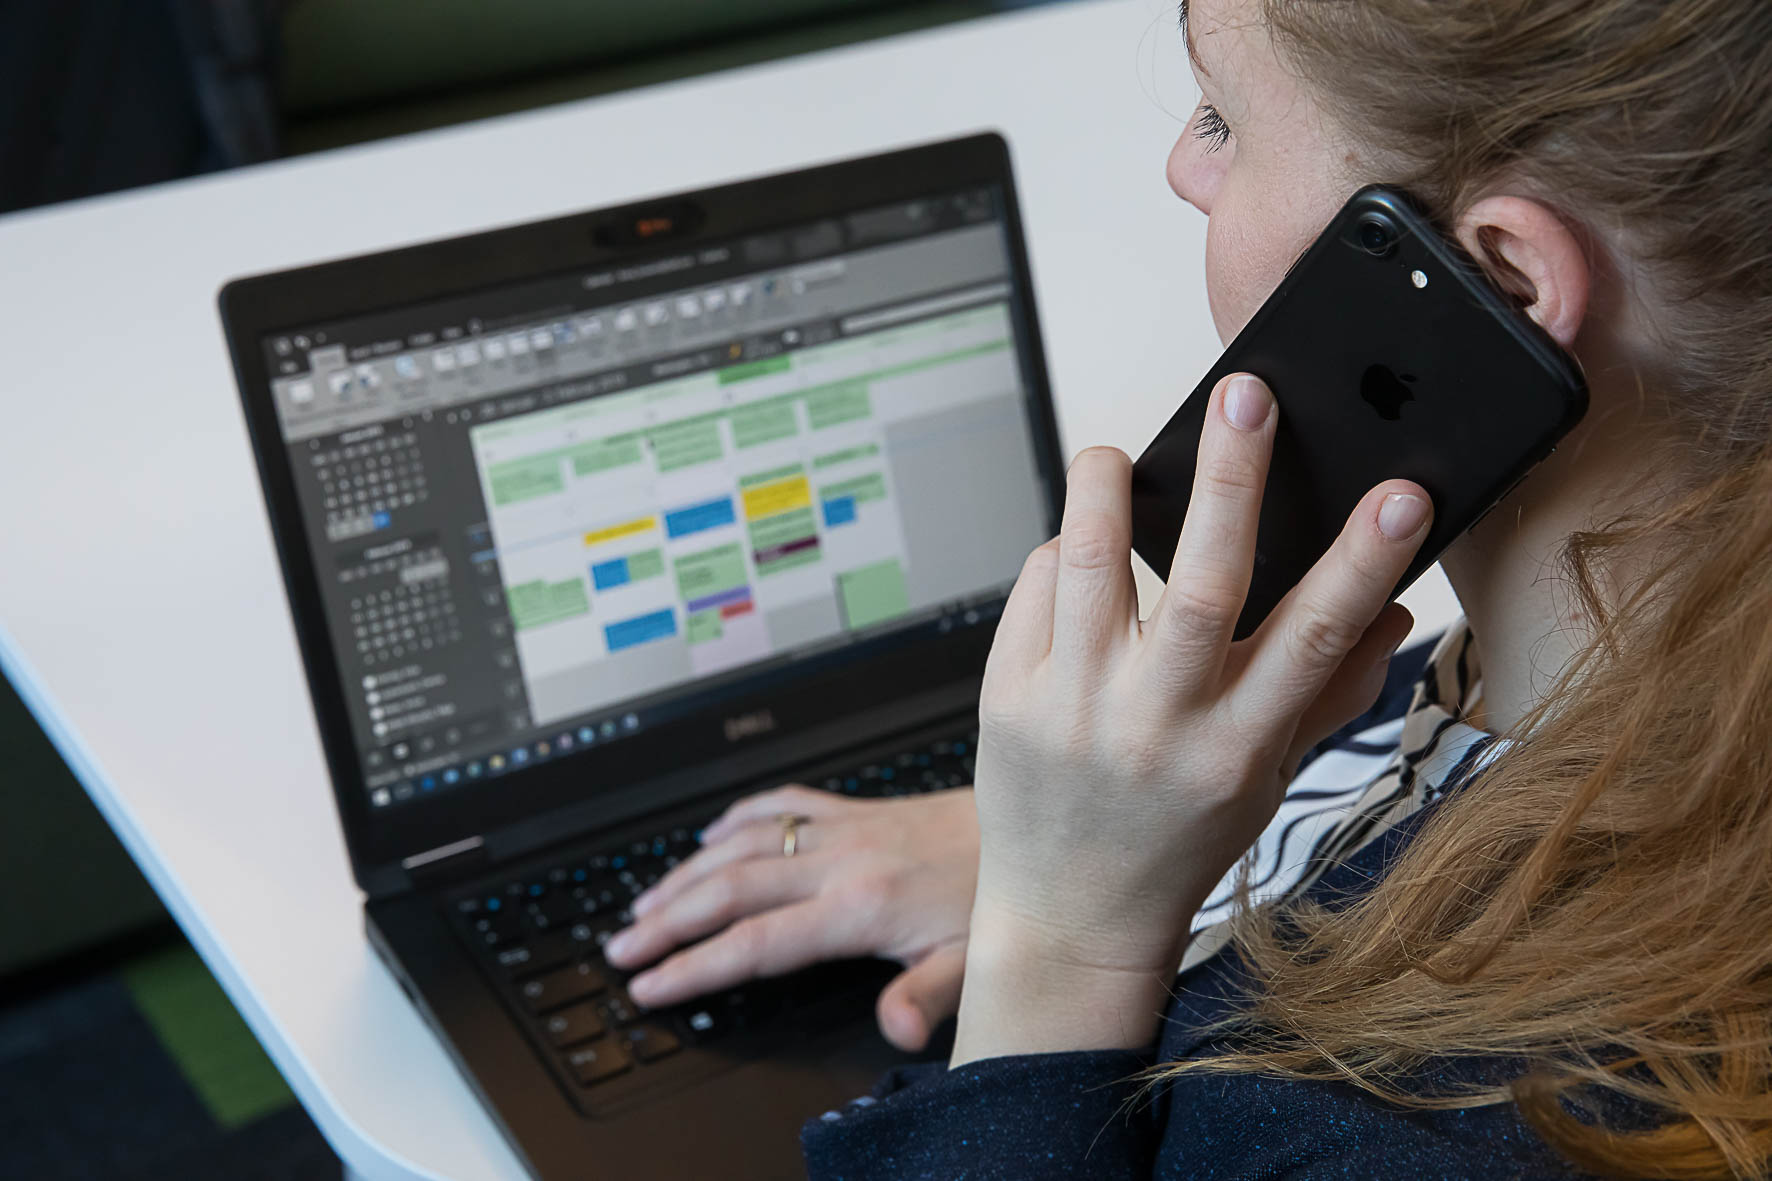 Eine Frau sitzt mit dem Handy telefonierend vor einem Laptop, das einen Kalender mit Wochenplanung anzeigt.